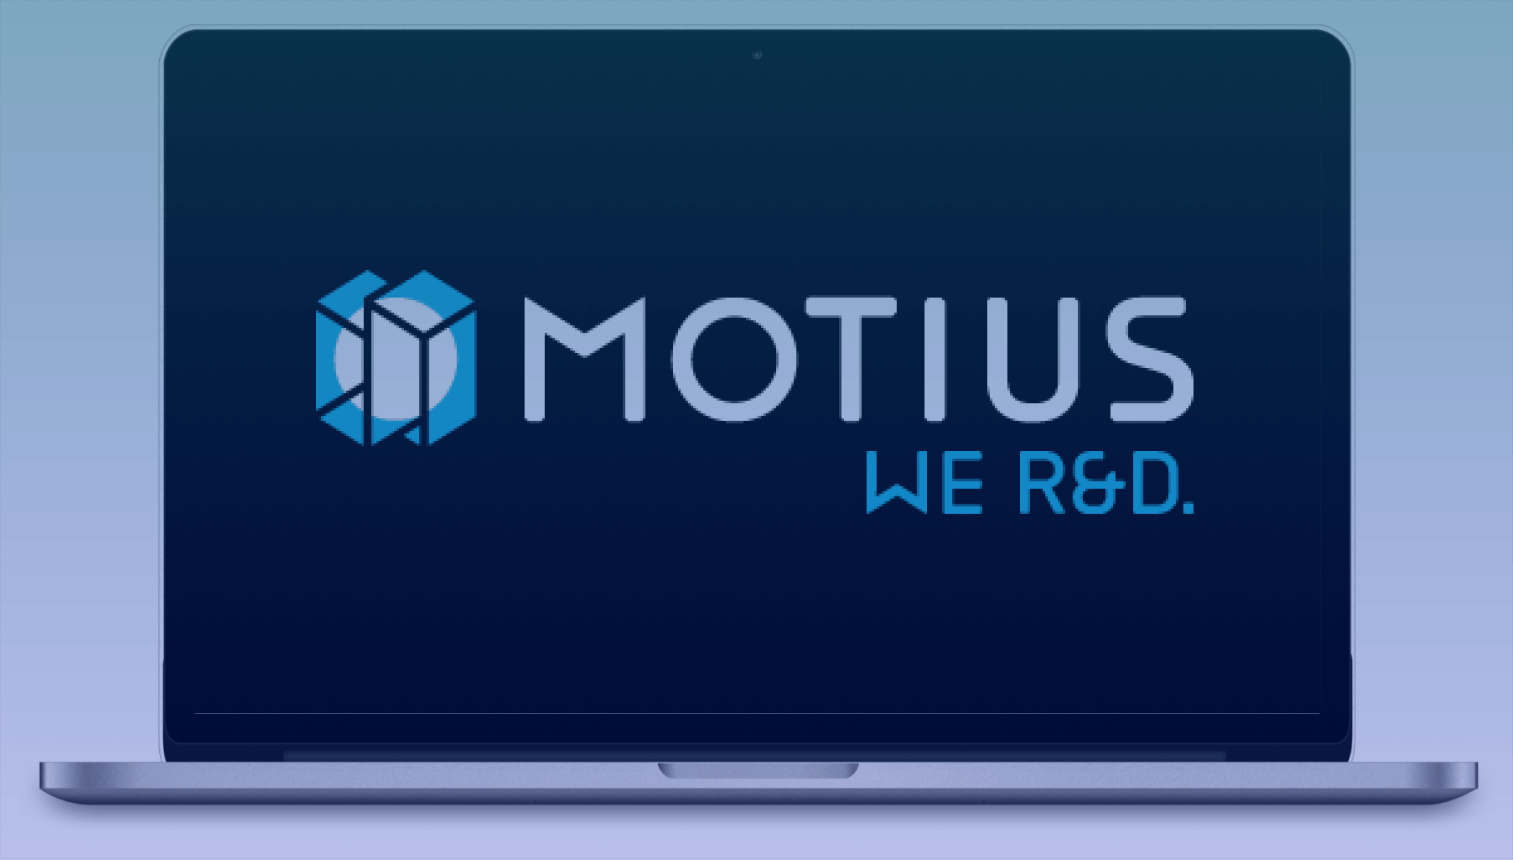 Motius s'associe à Werk24 pour des solutions innovantes